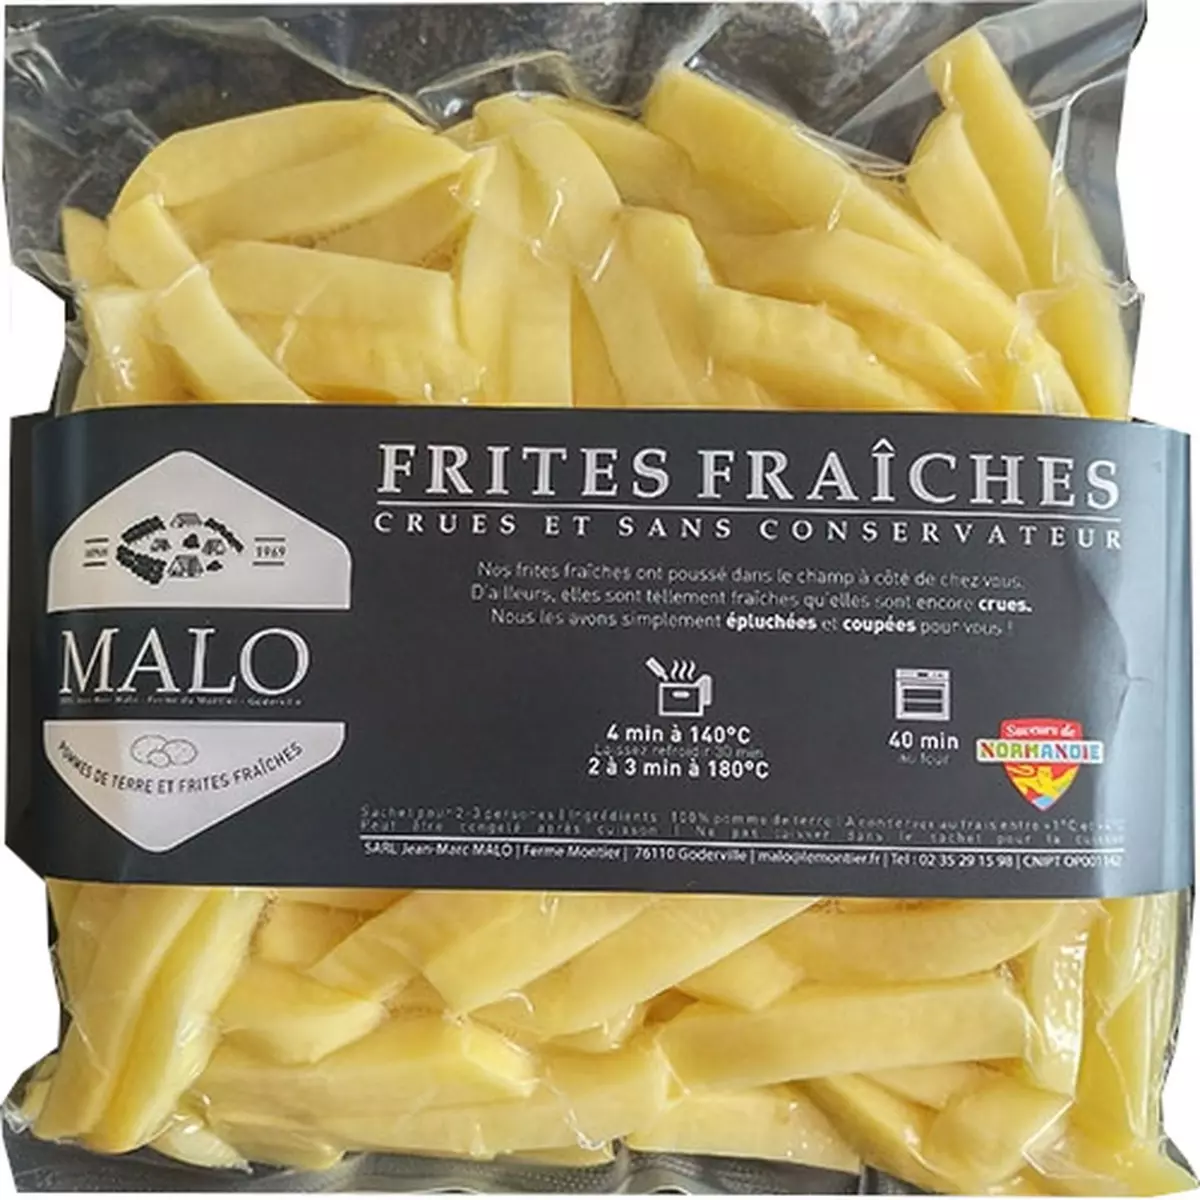 MALO Frites fraiches 1kg